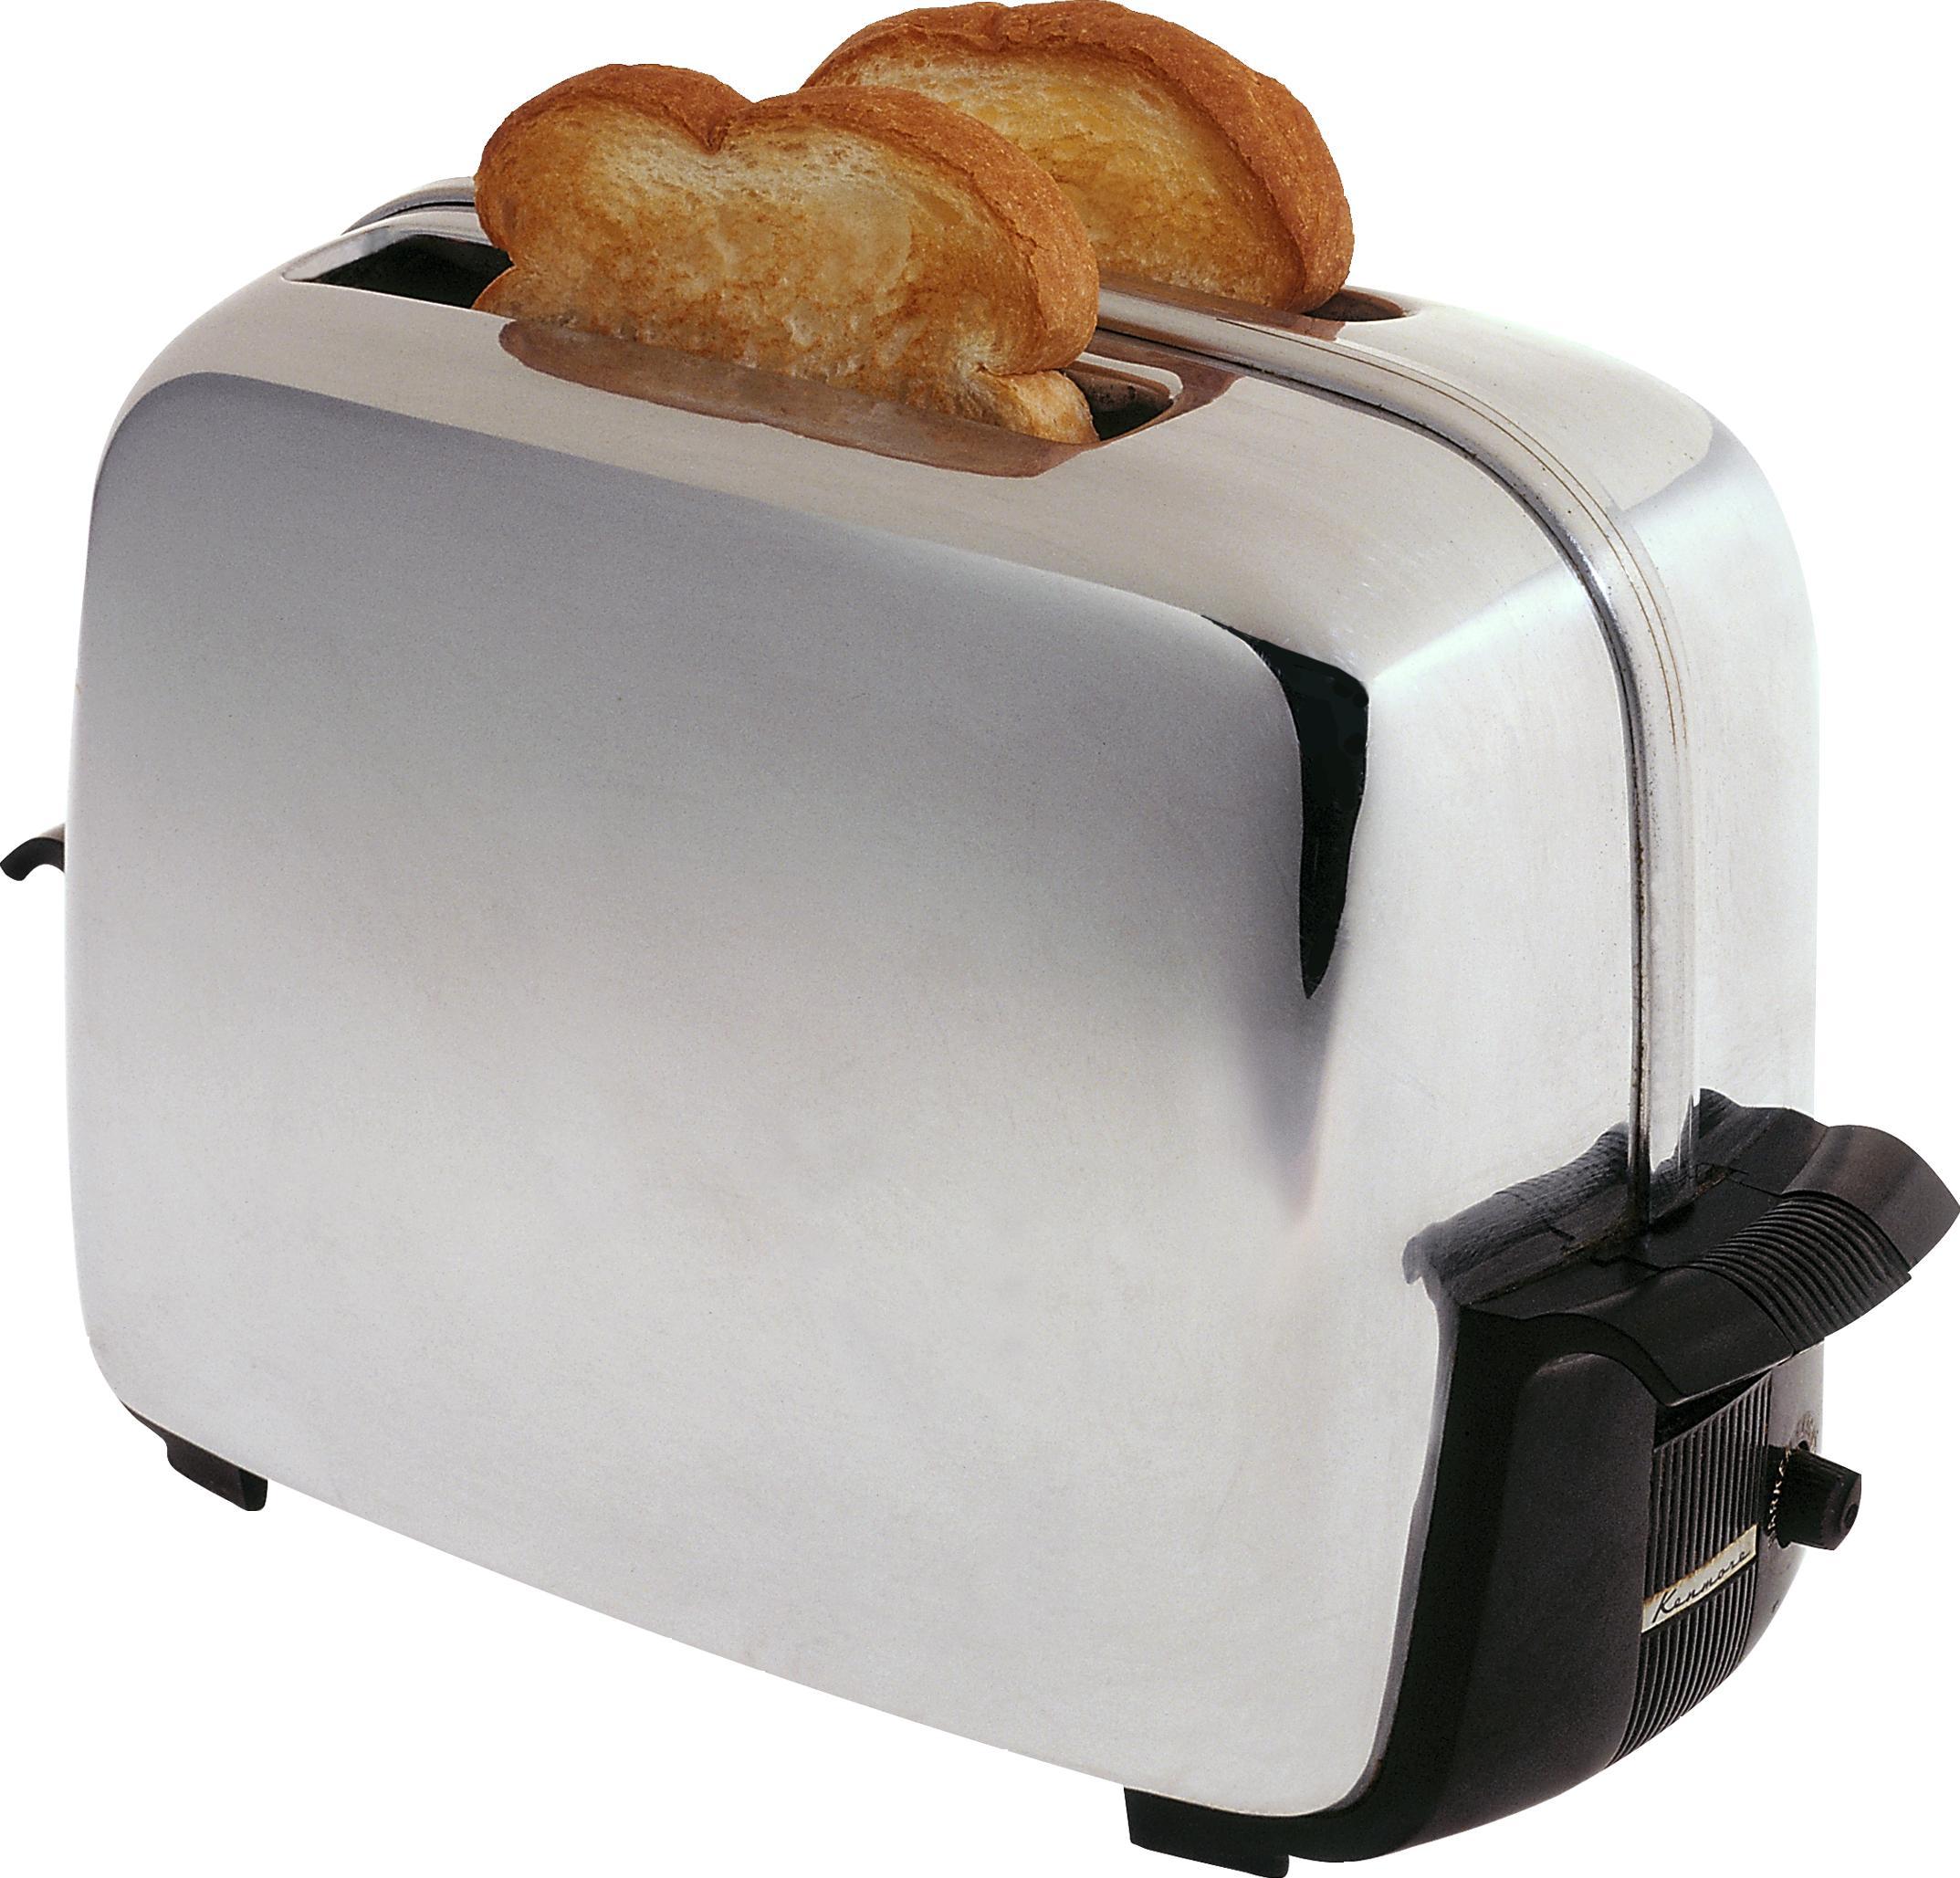 Для чего необходим тостер?